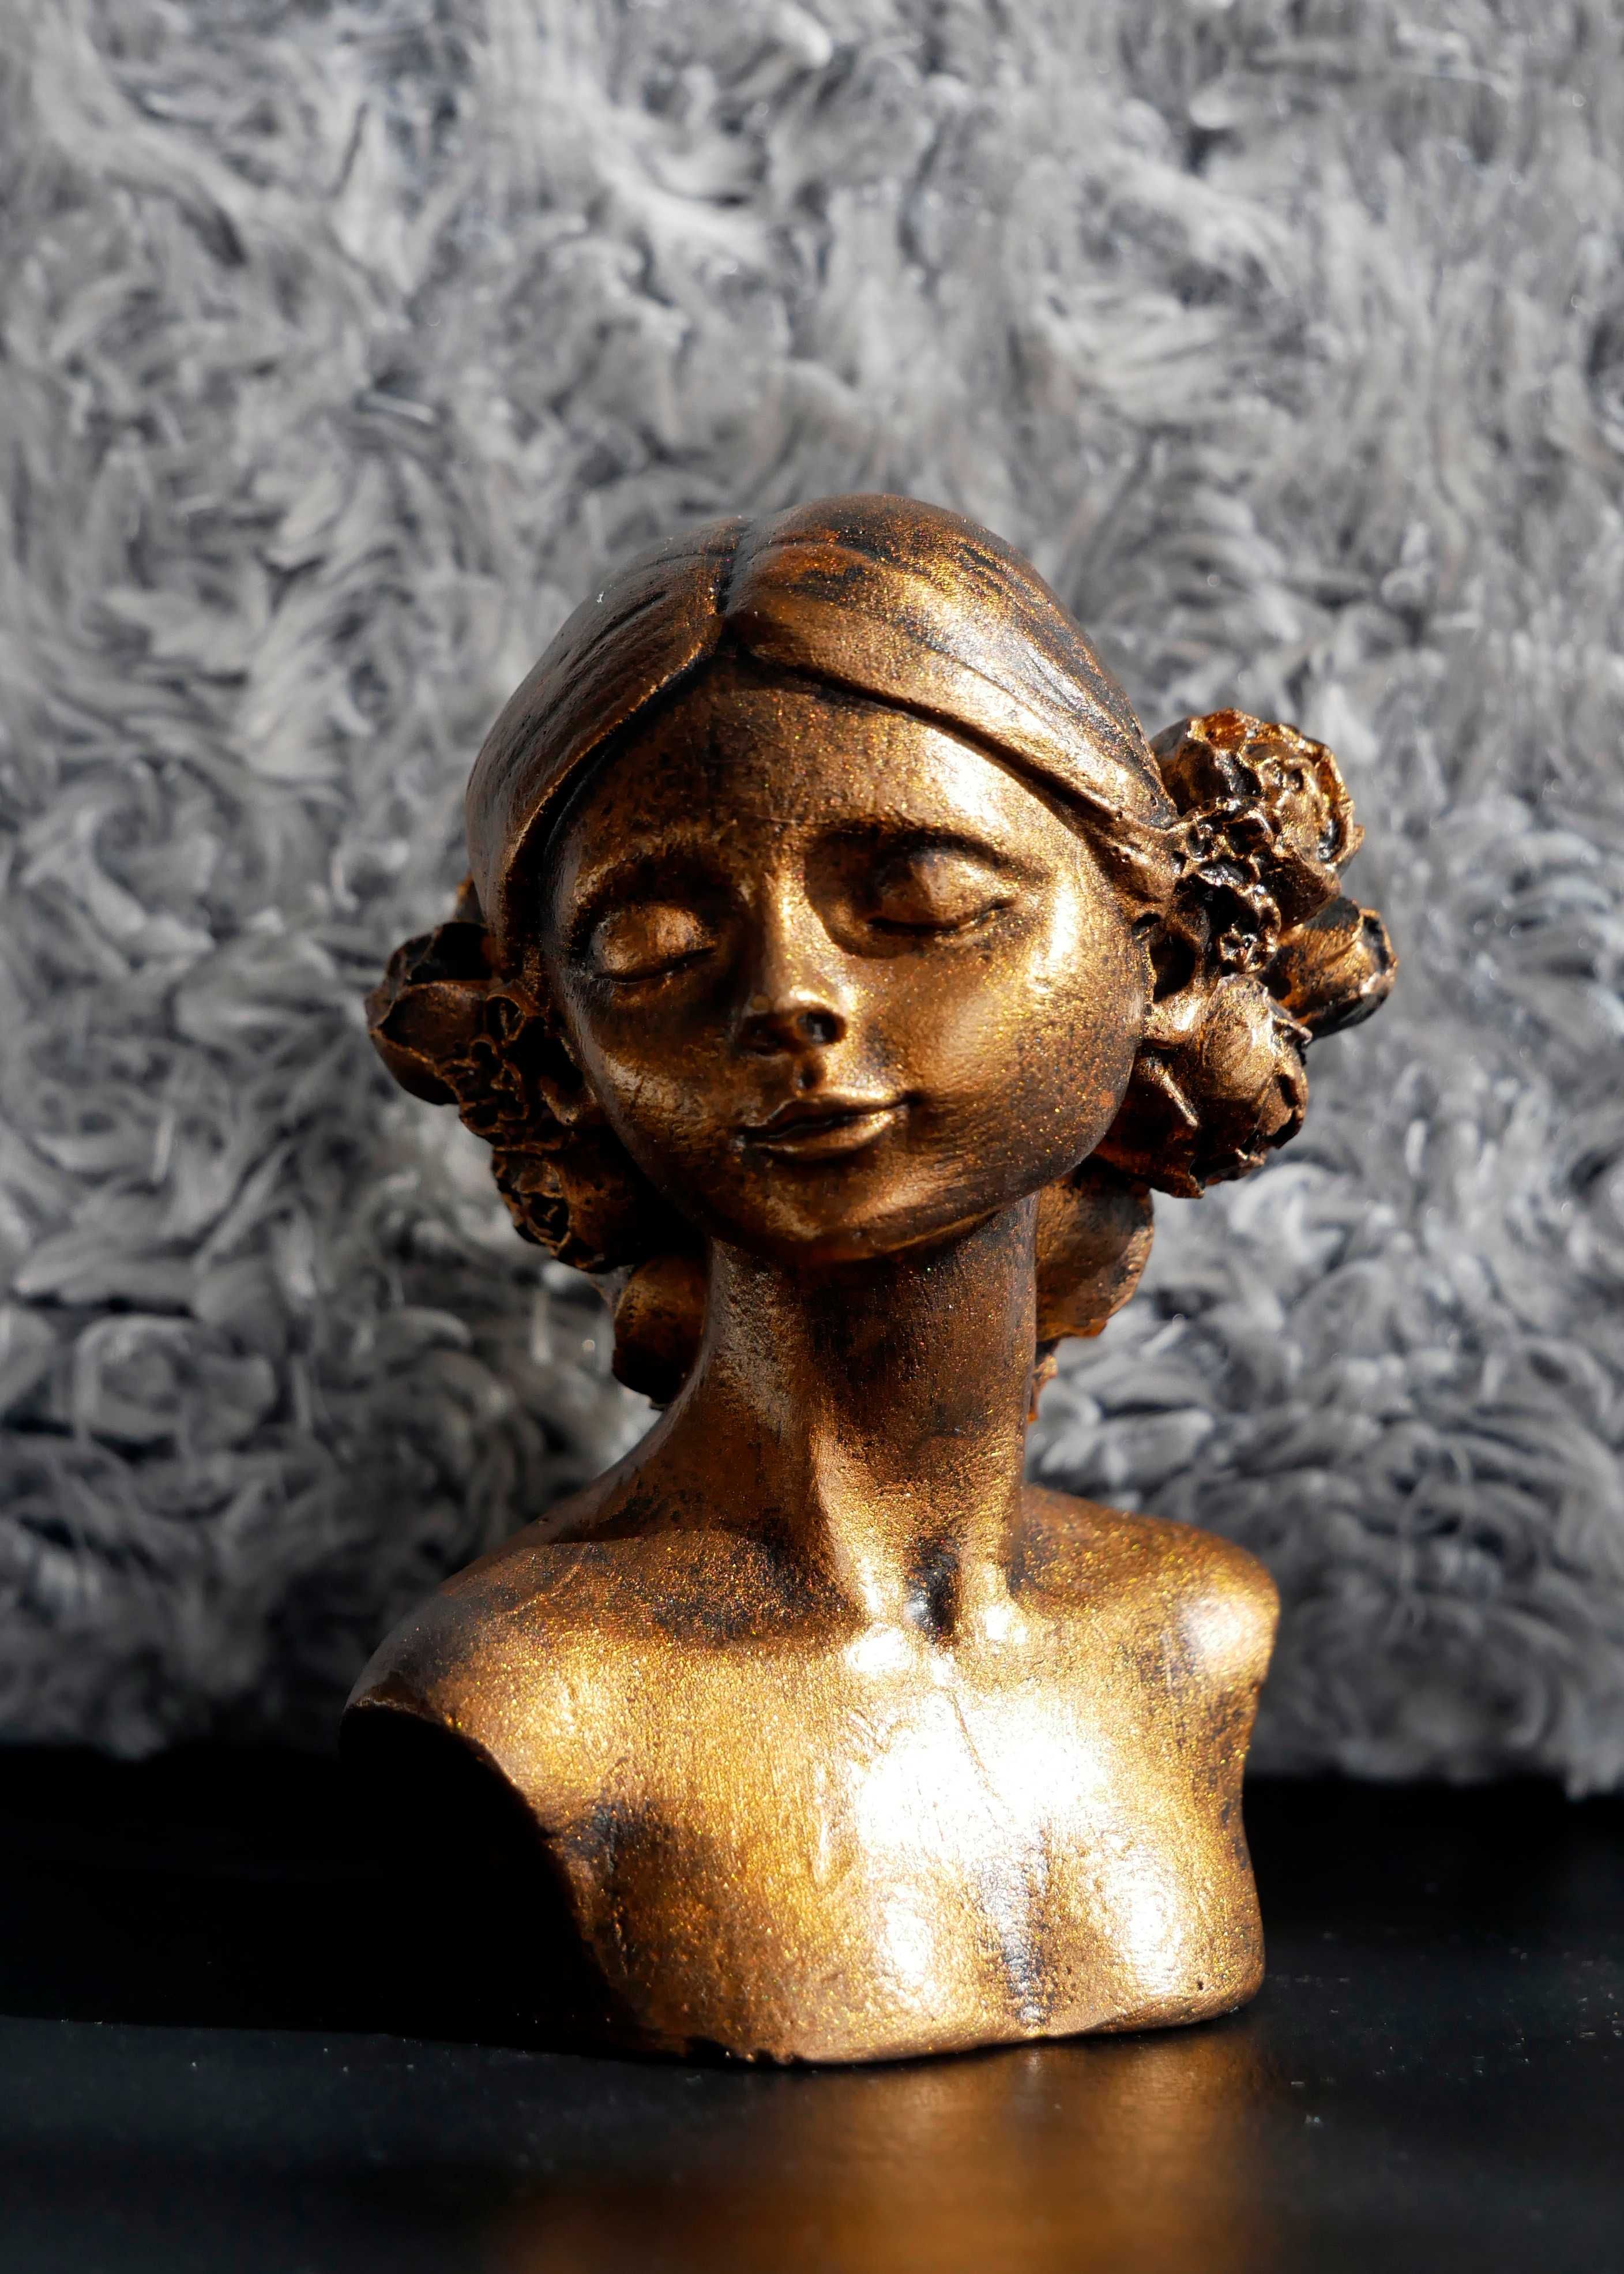 Rzeźba kobieta złota kwiaty we włosach wys. 10 cm